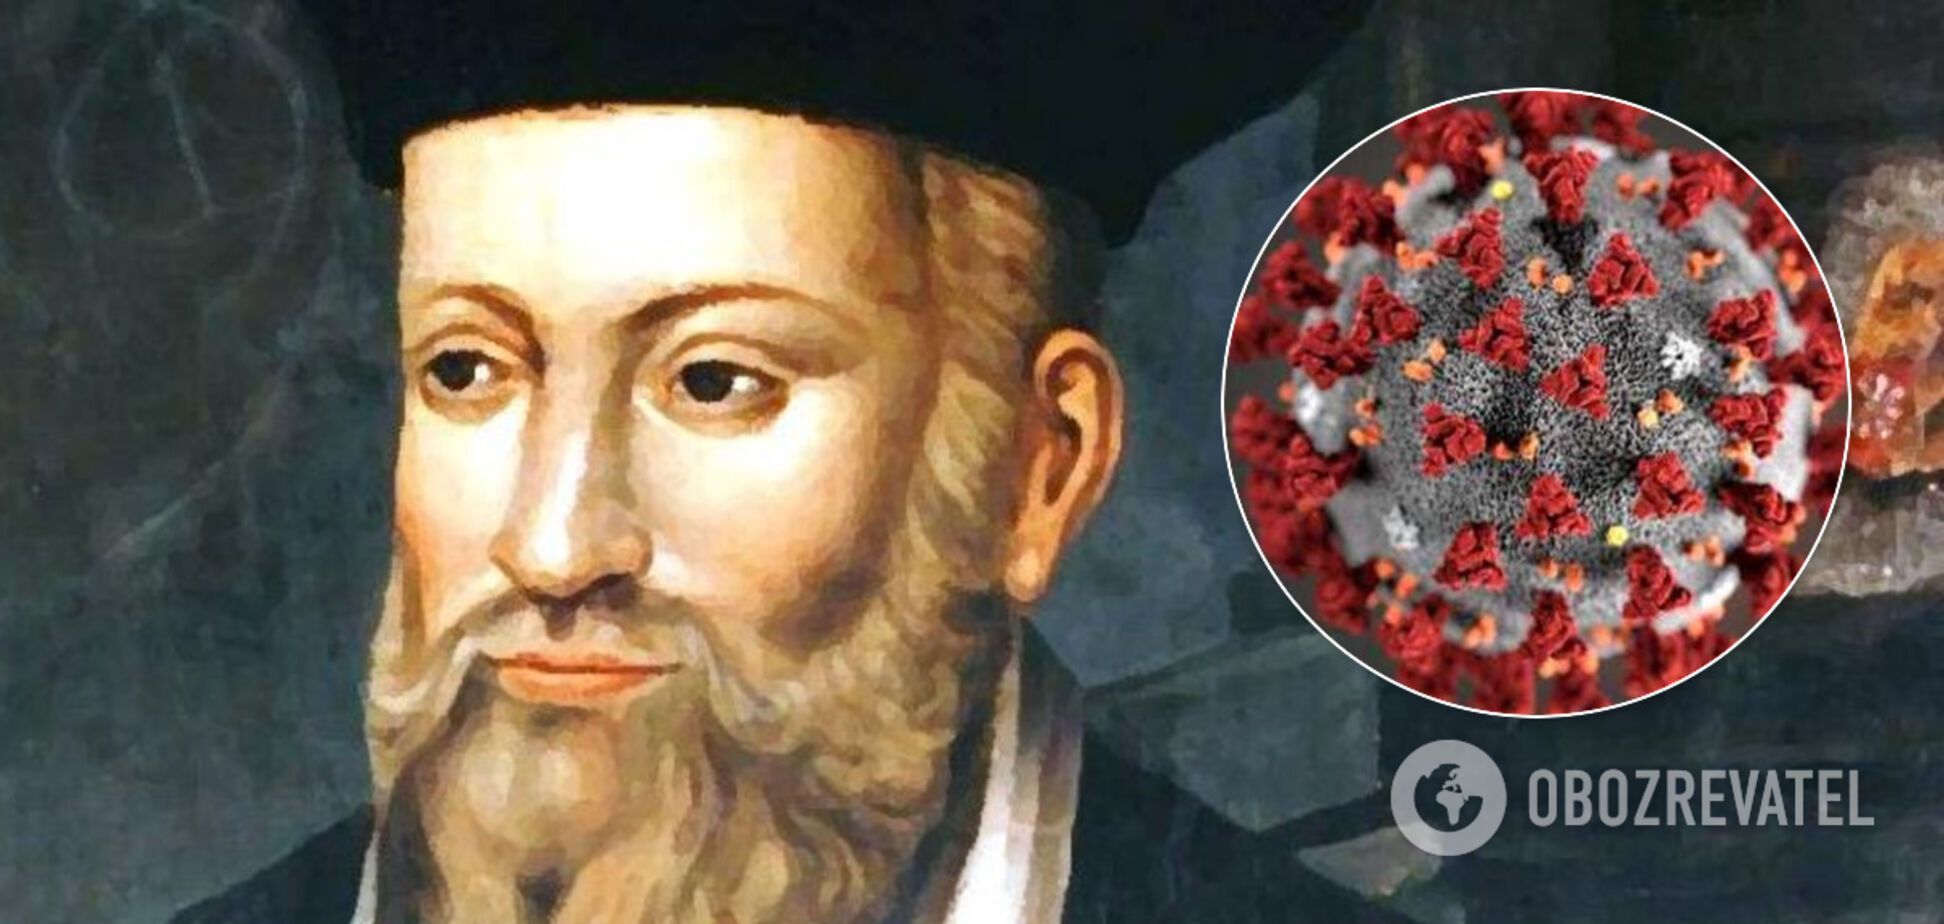 Нострадамус предсказал коронавирус и спасение от него